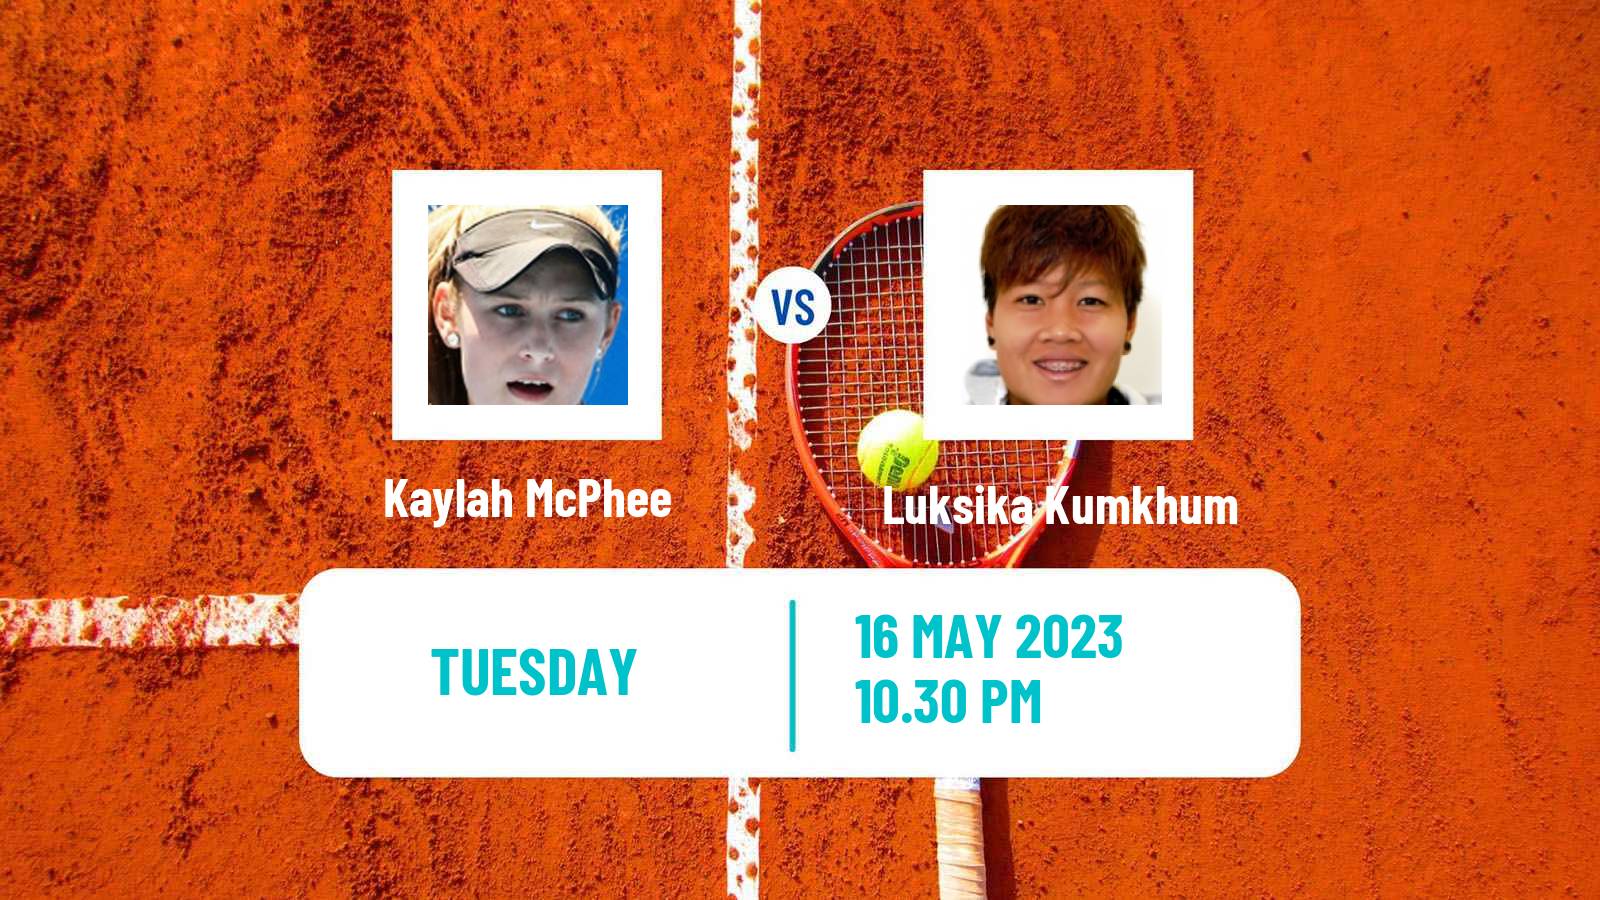 Tennis ITF W25 Incheon Women Kaylah McPhee - Luksika Kumkhum